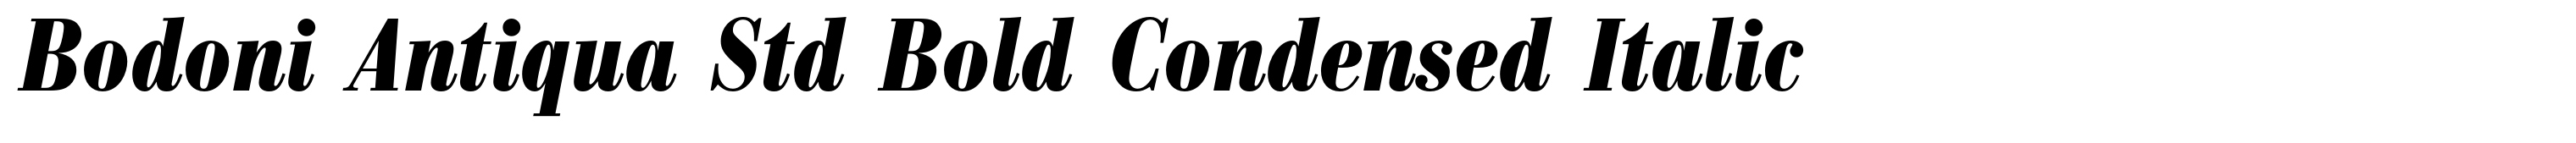 Bodoni Antiqua Std Bold Condensed Italic